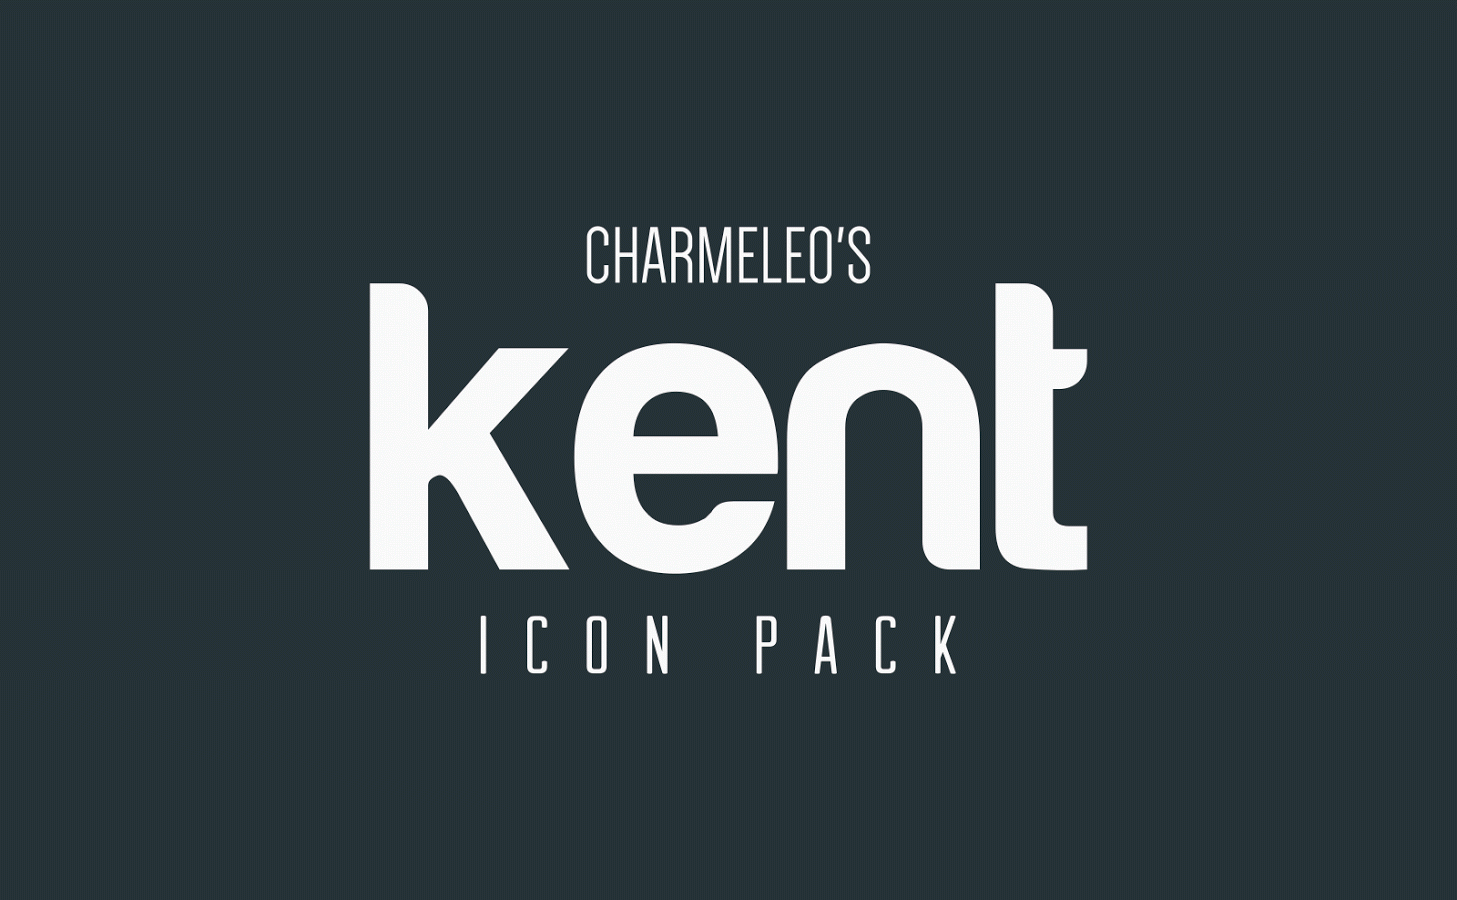 Скачать Kent 1.1.1 для Android - 1457 x 900 png 119kB